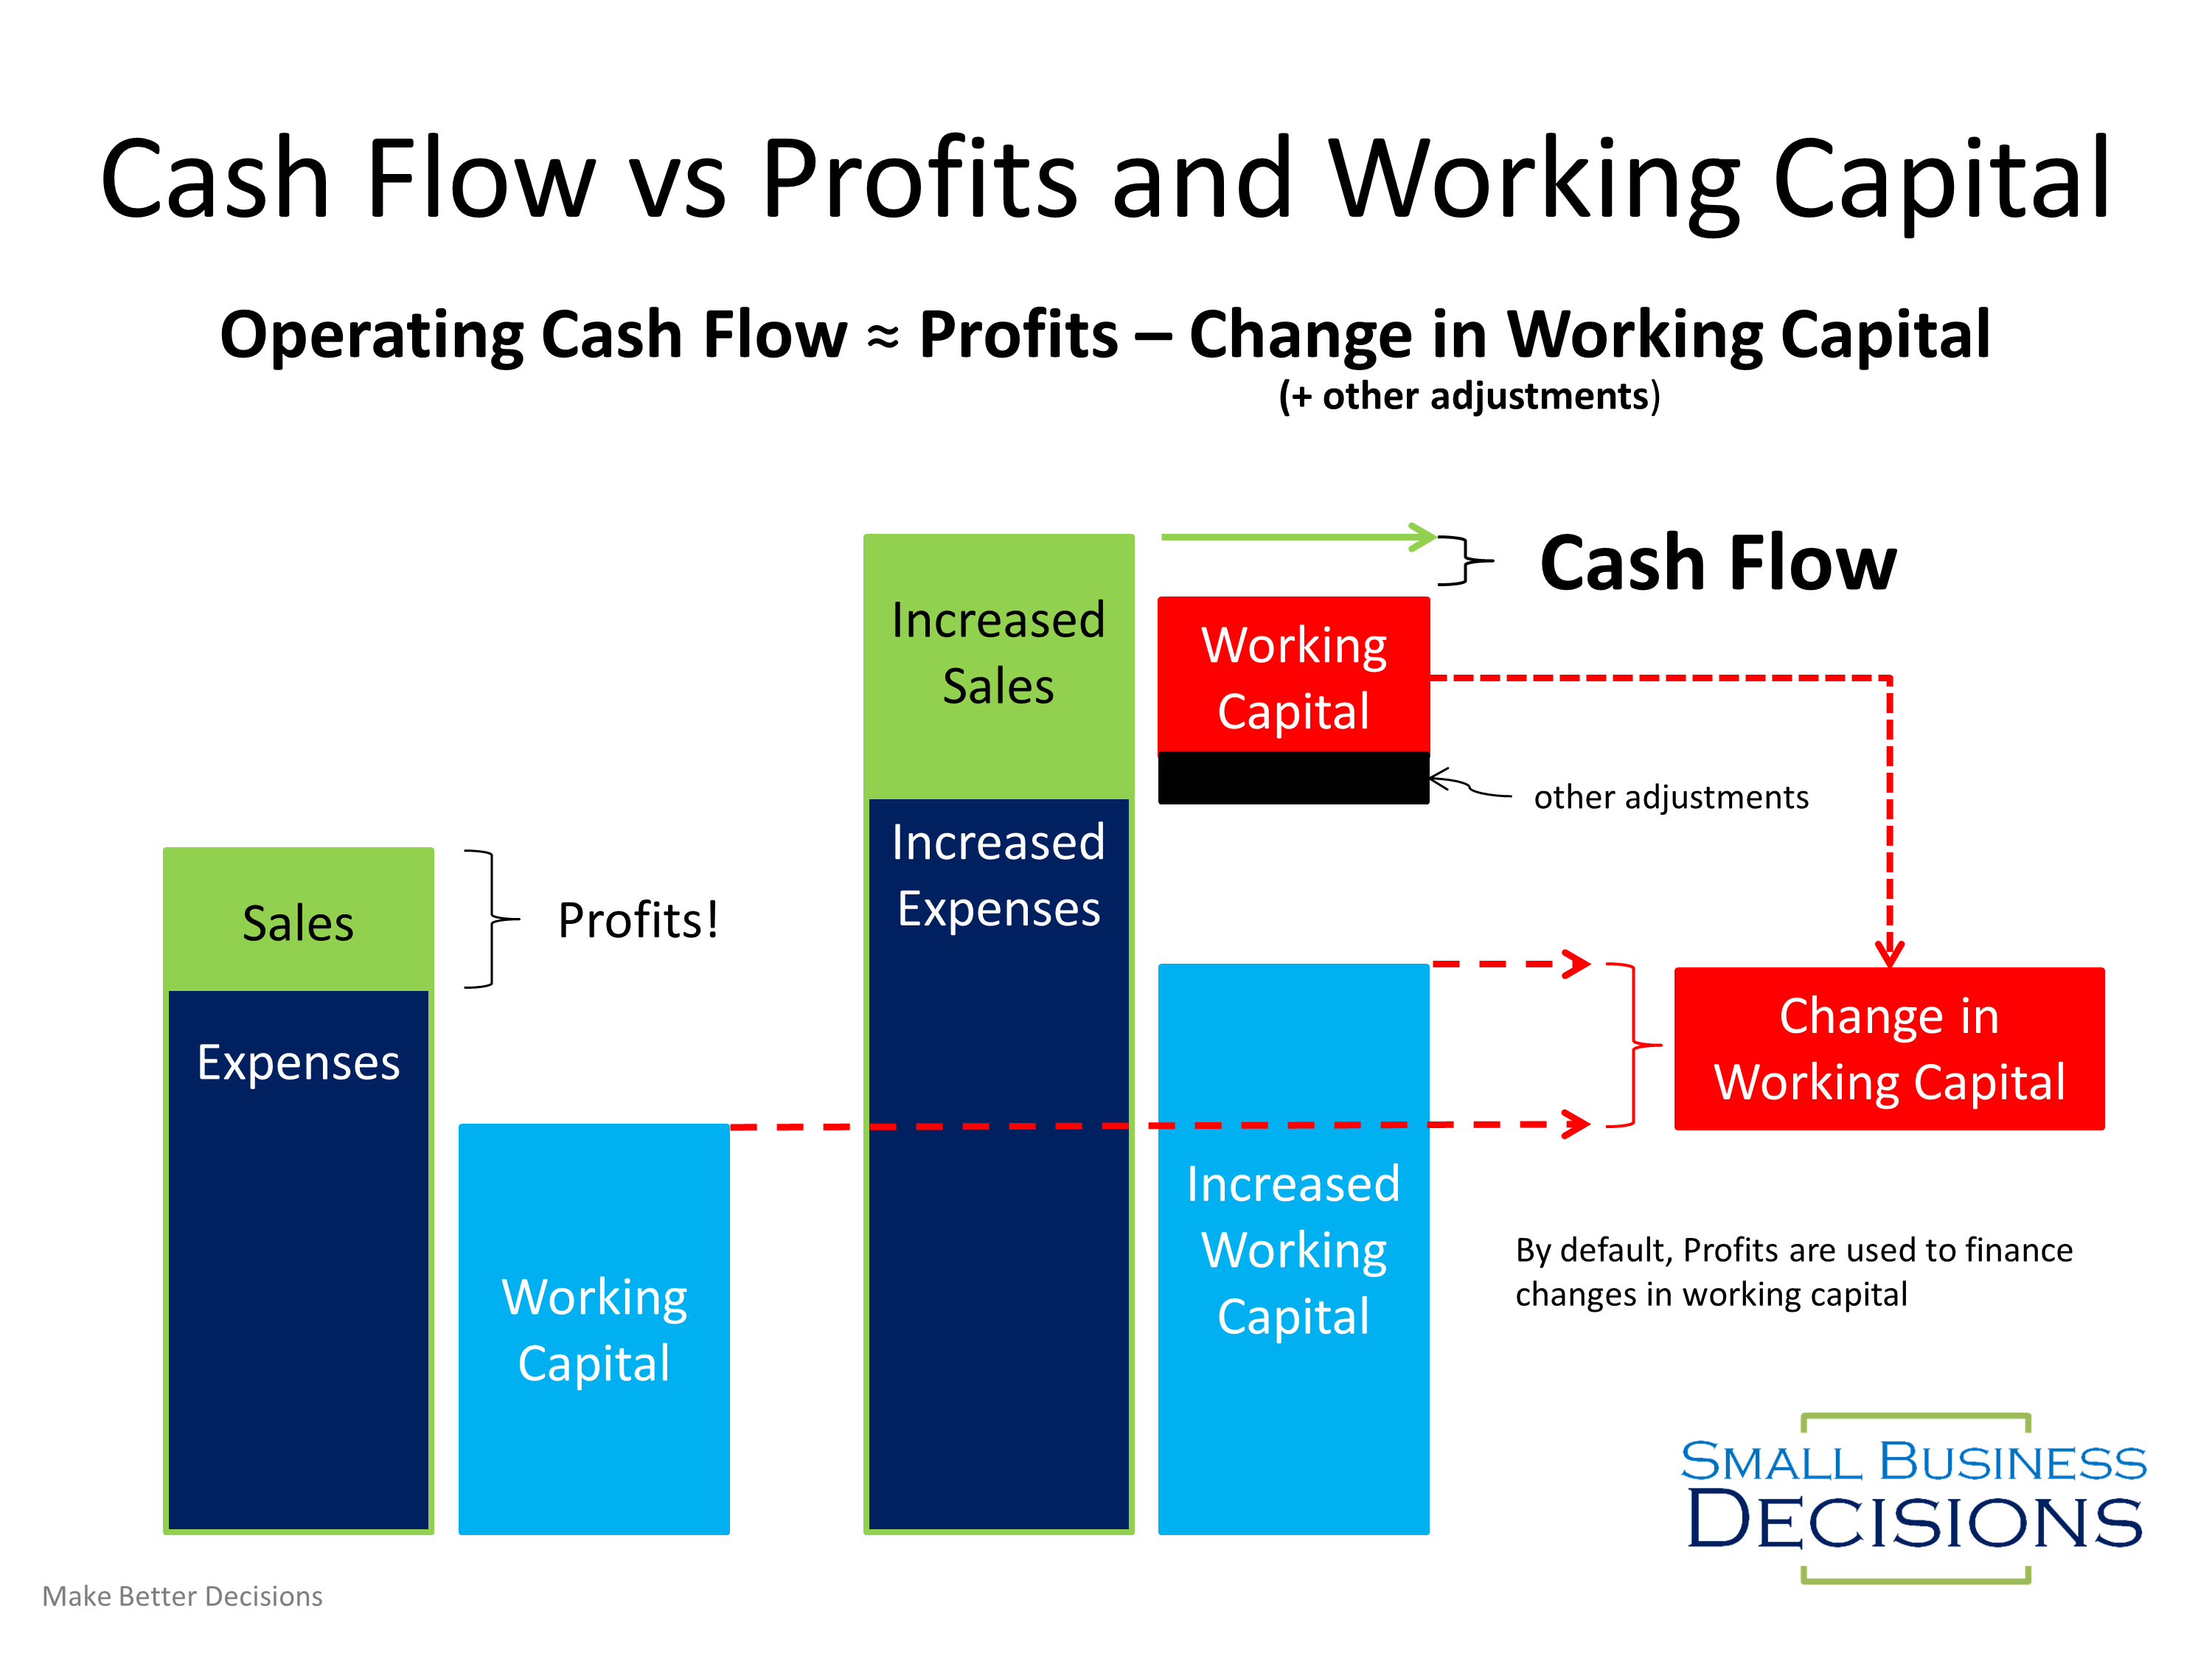 cash flow vs profit